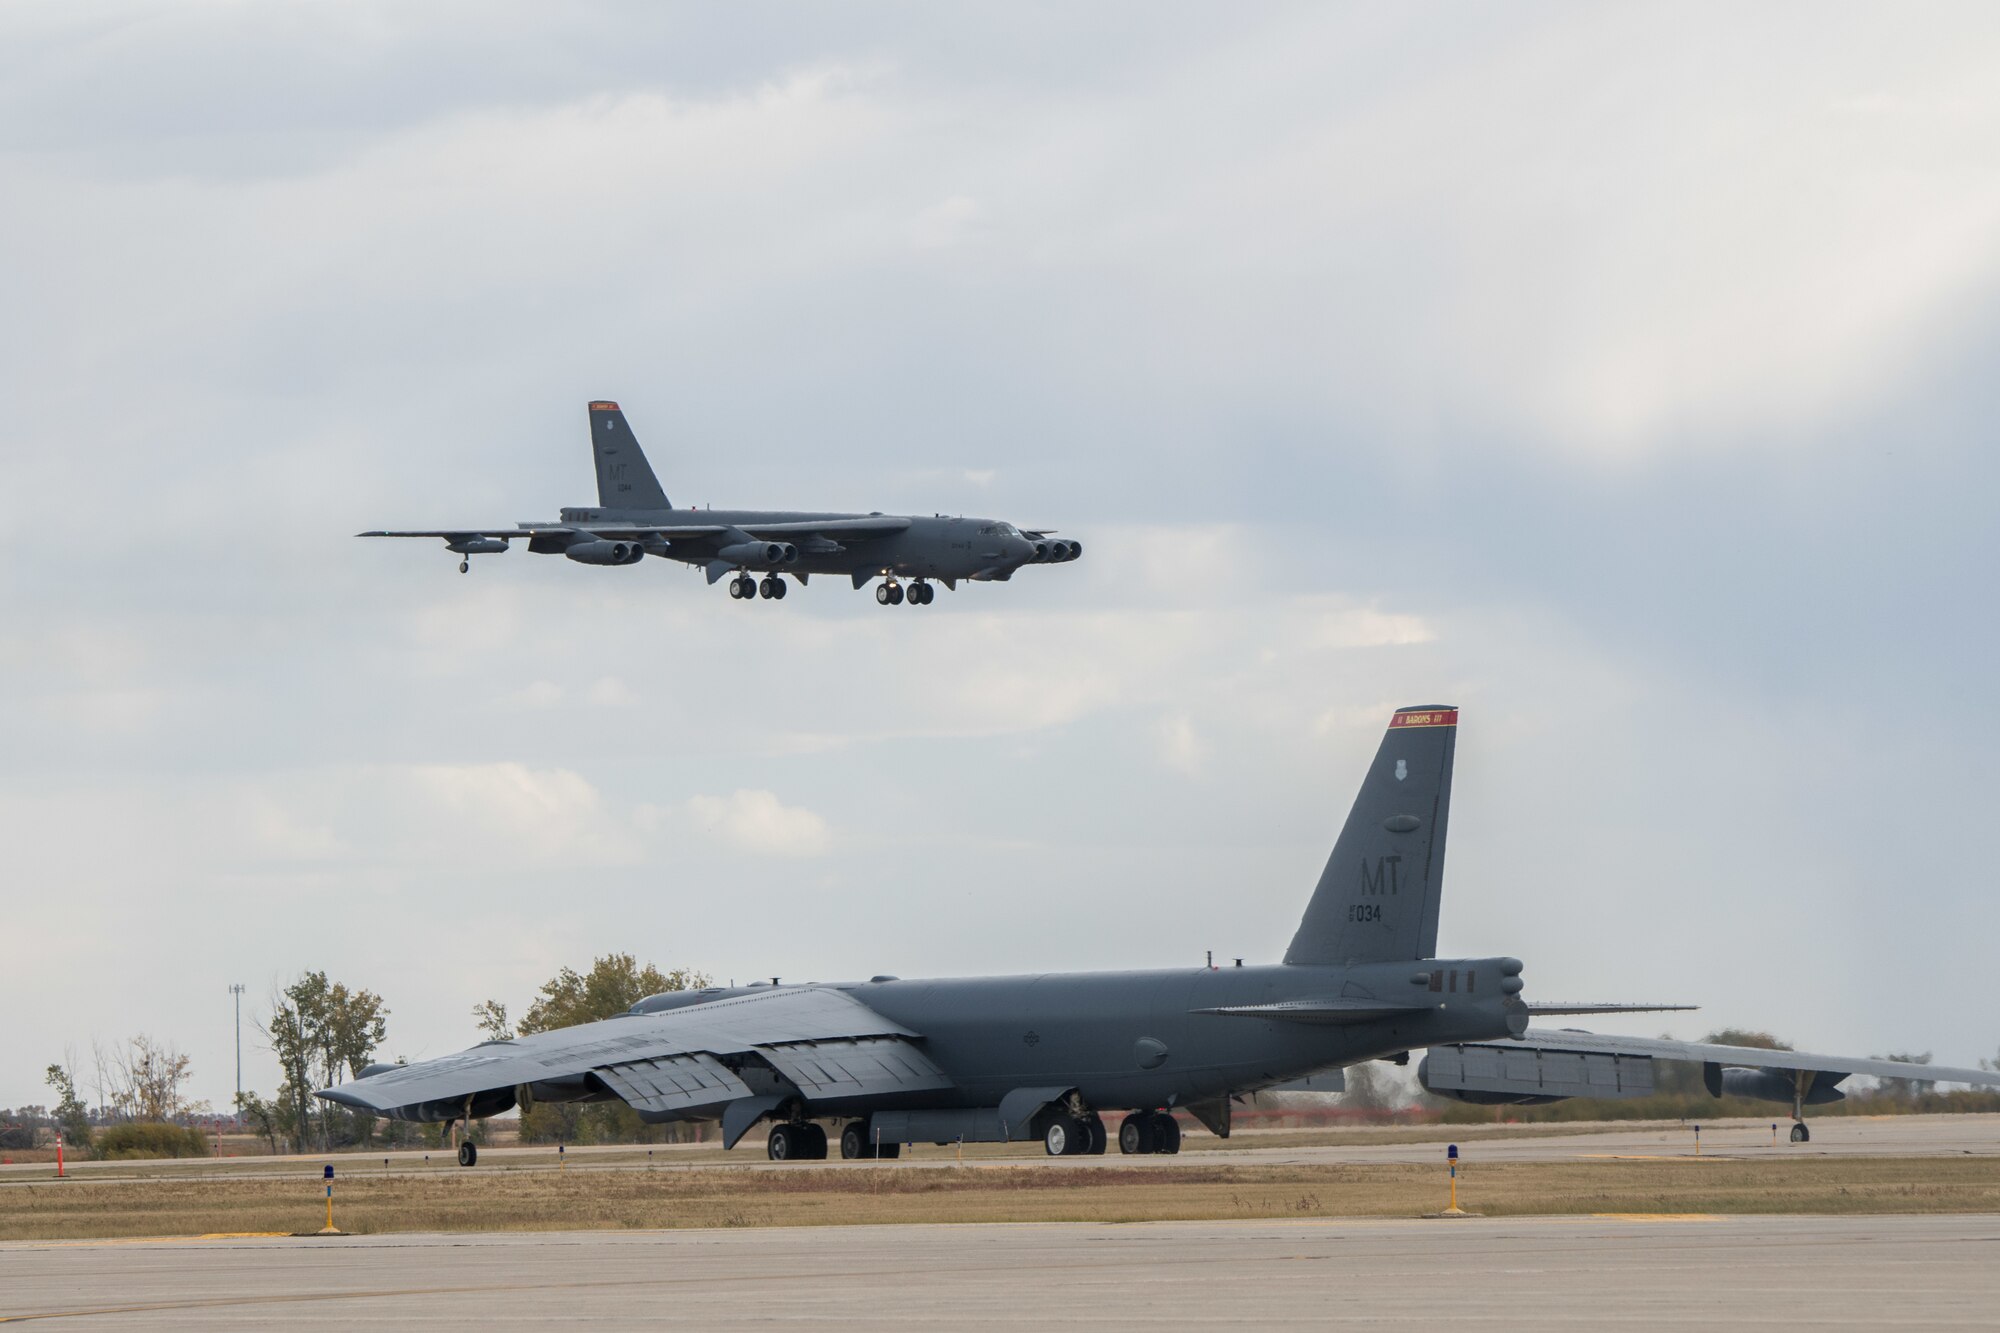 B-52 Stratofortress aircraft land at Minot AFB